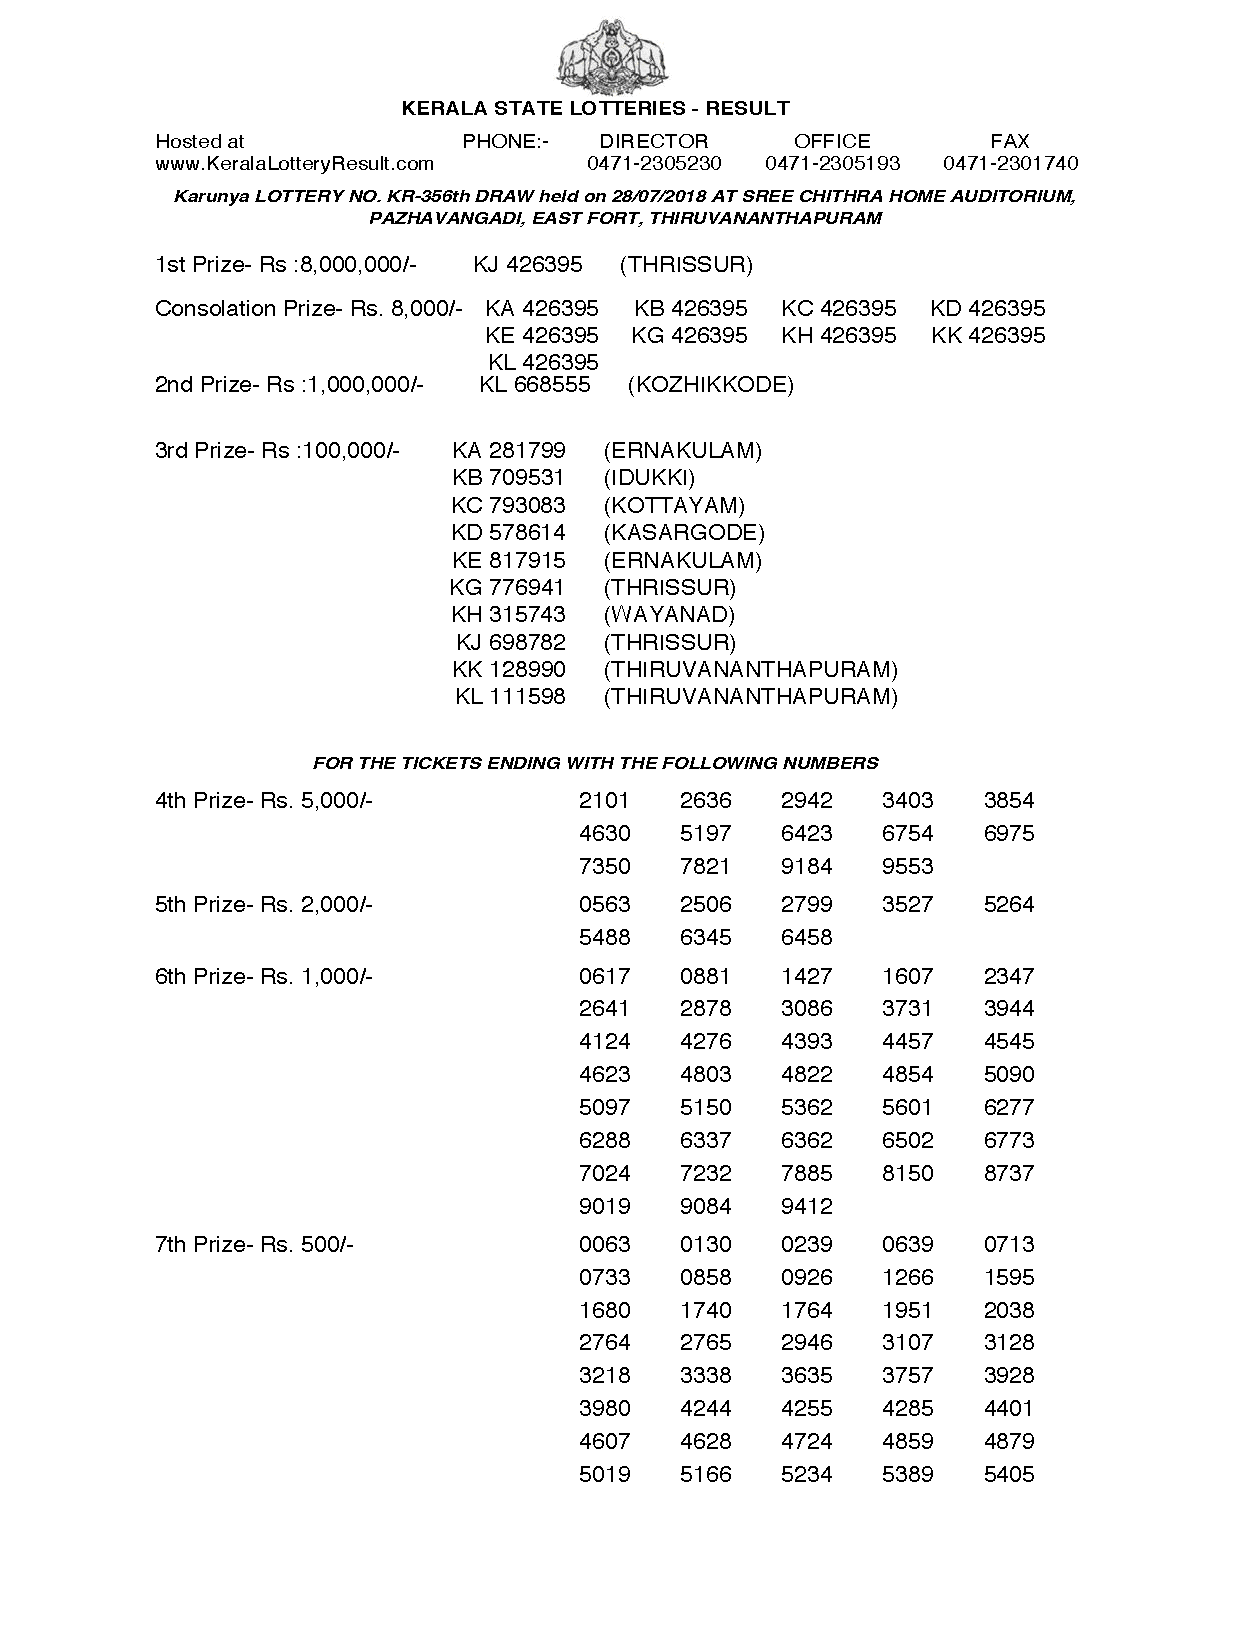 Karunya KR356 Kerala Lottery Results Screenshot: Page 1